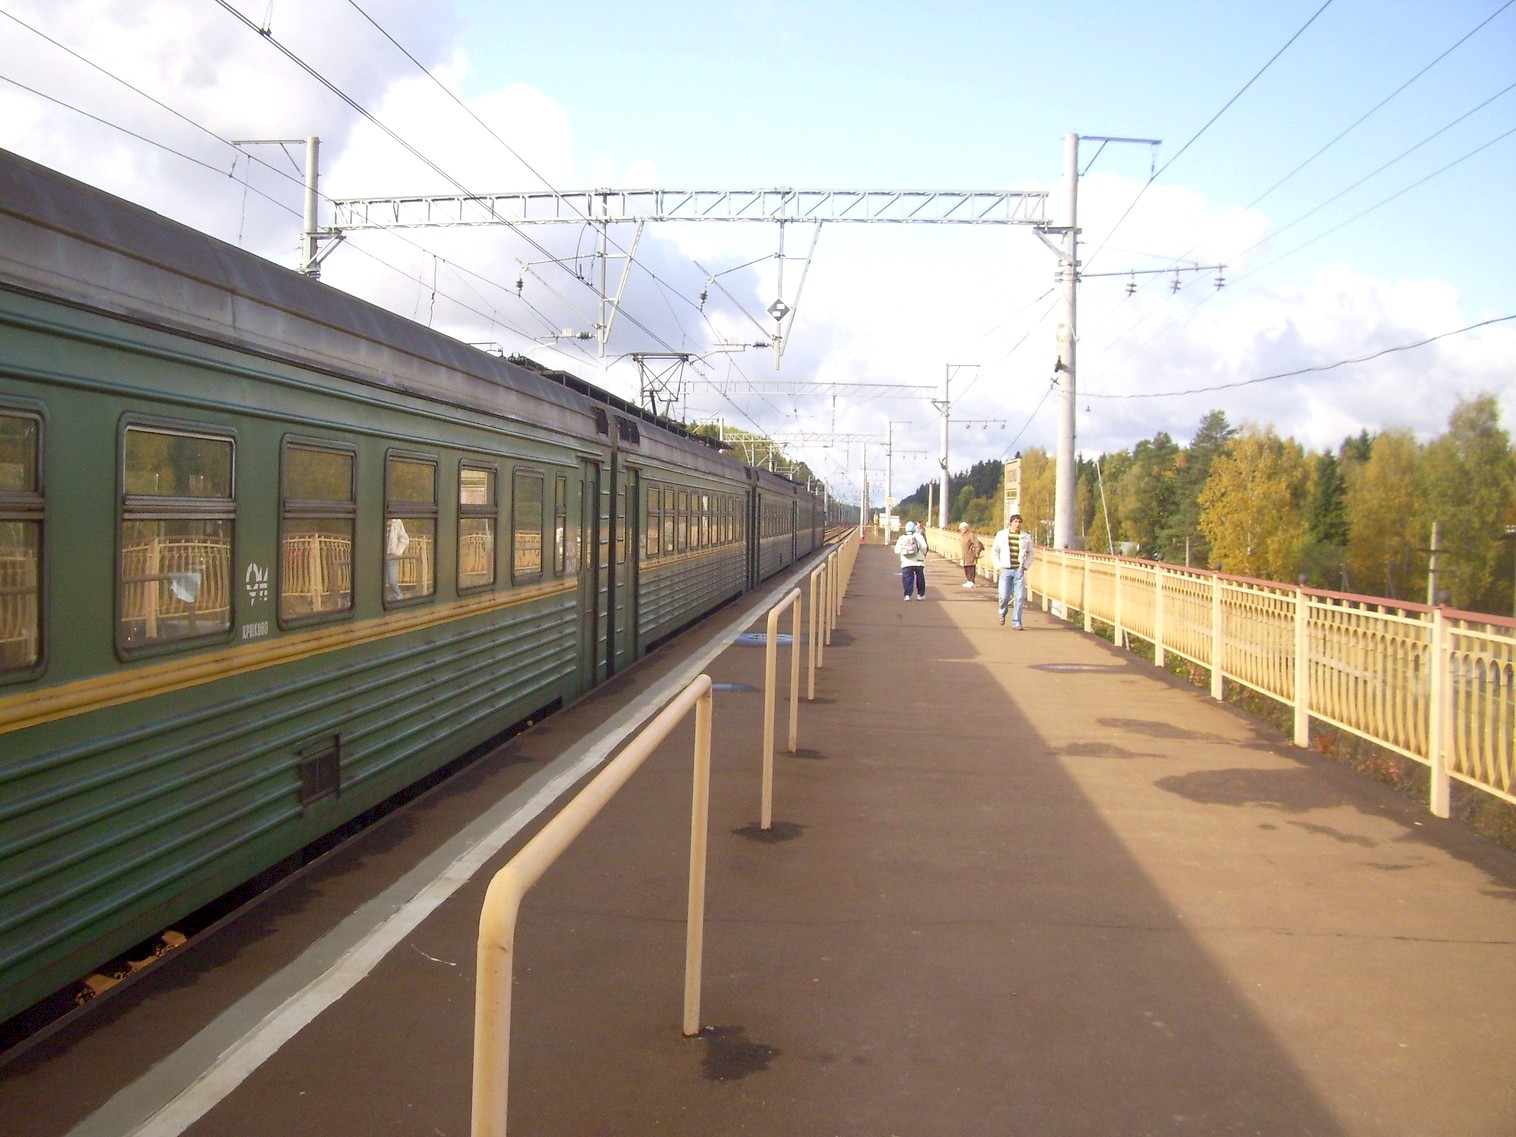 Петербурго-Московская железнодорожная линия на территории Московской области  — станция Покровка: фотографии (страница 5, сделаны в 2009 году)